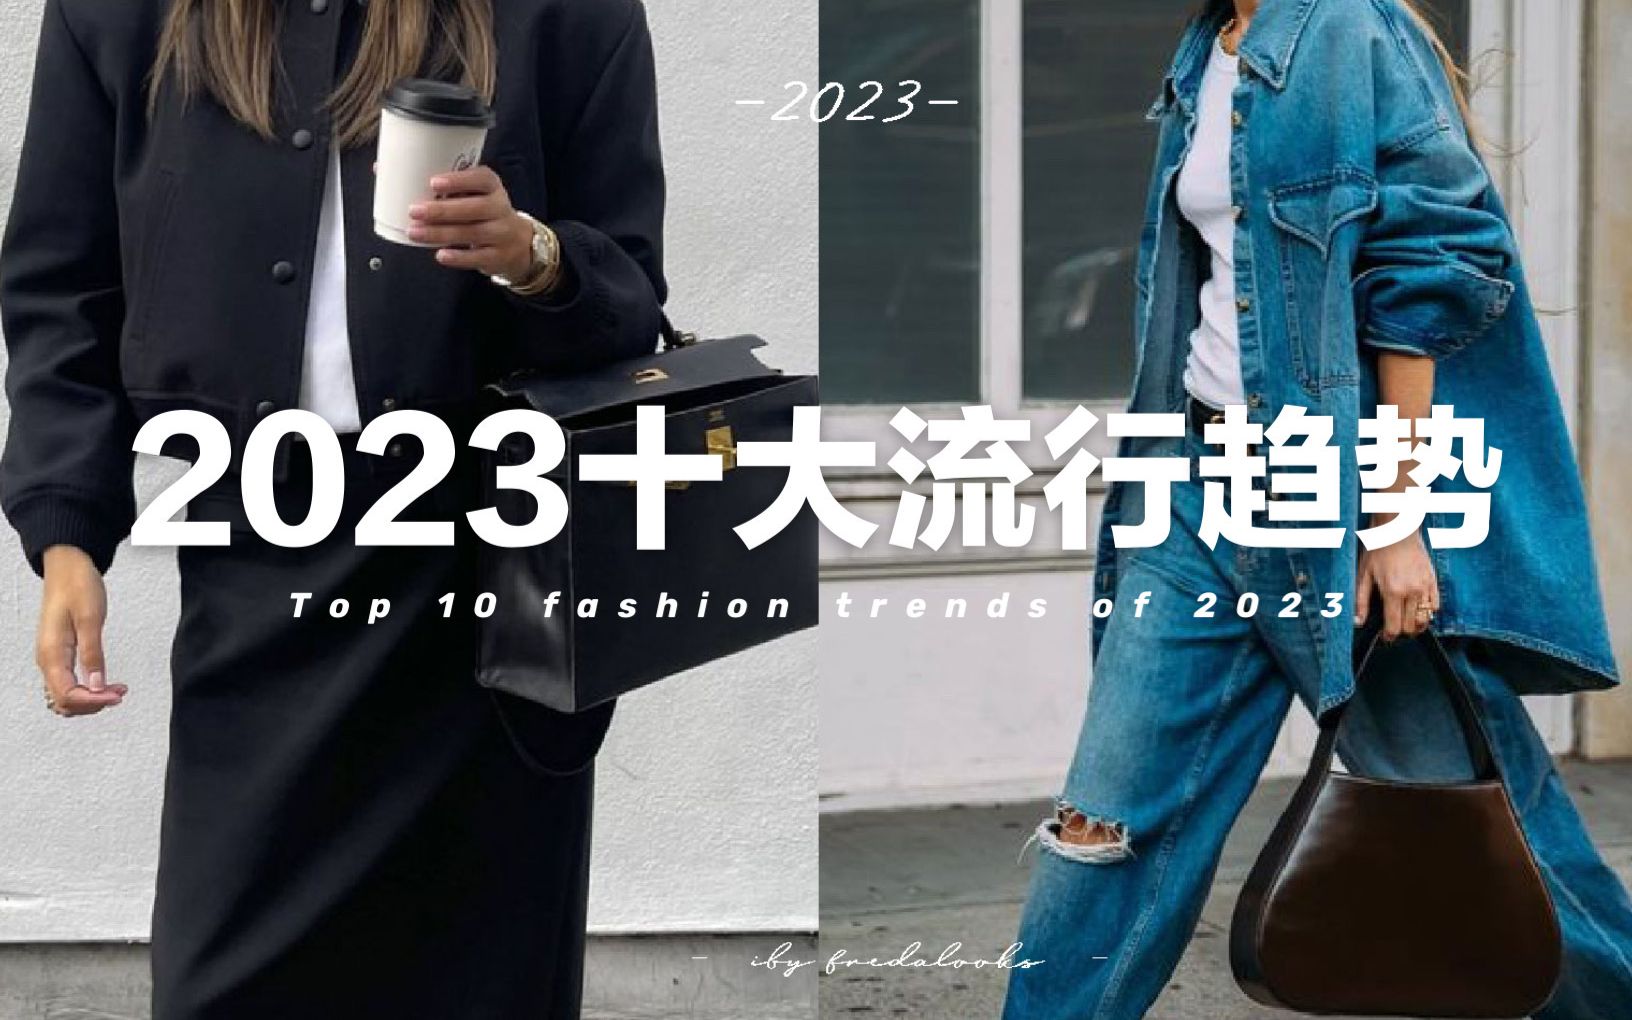 【2023全年流行趋势】10个今年适合普通人日常穿着的流行趋势 | Top 10 wearable fashion trends of 2023 | freda